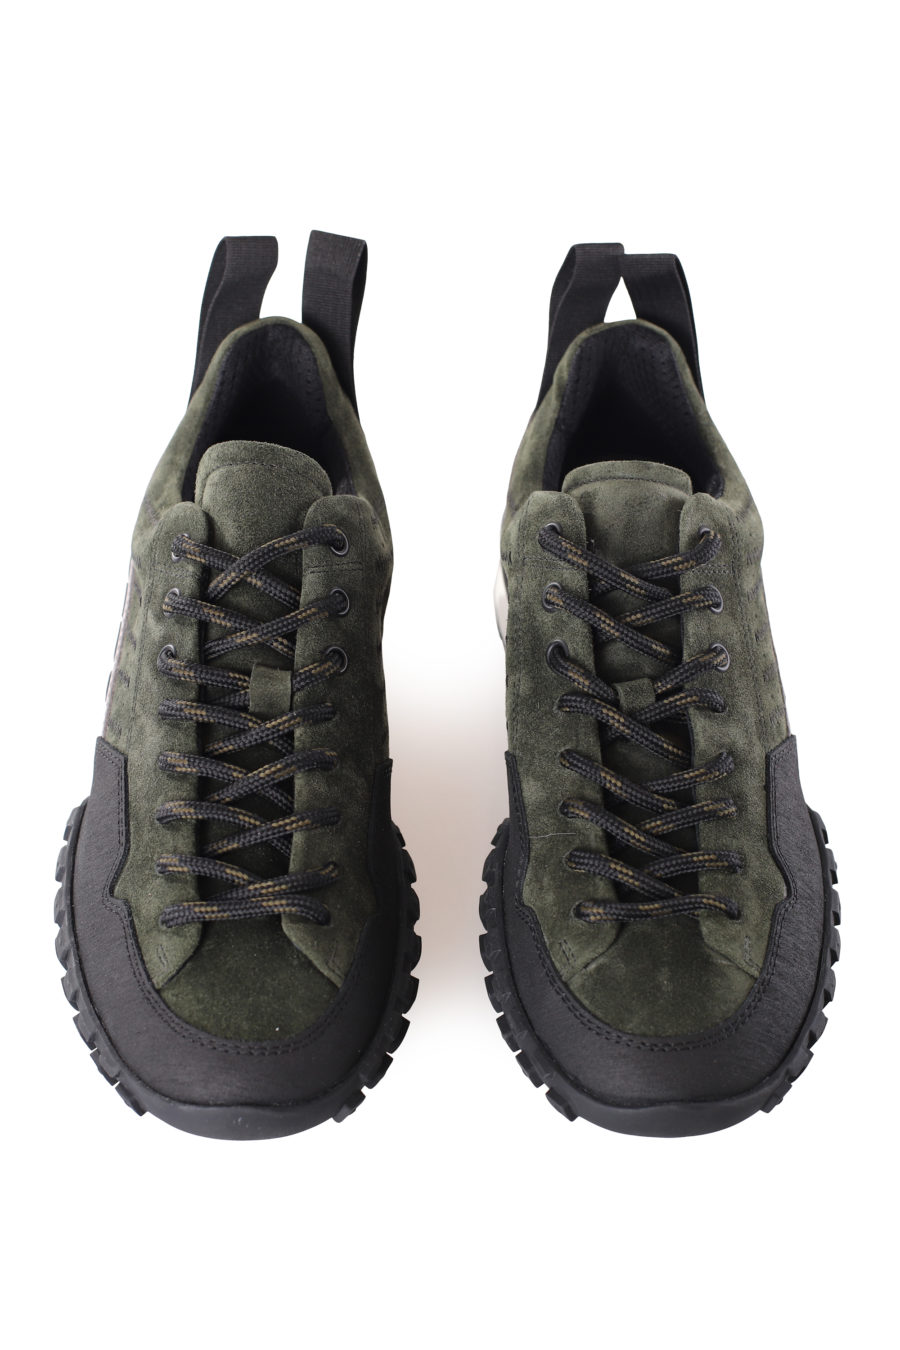 Zapatillas negras y verde militar de tela con logo en cinta - IMG 9544